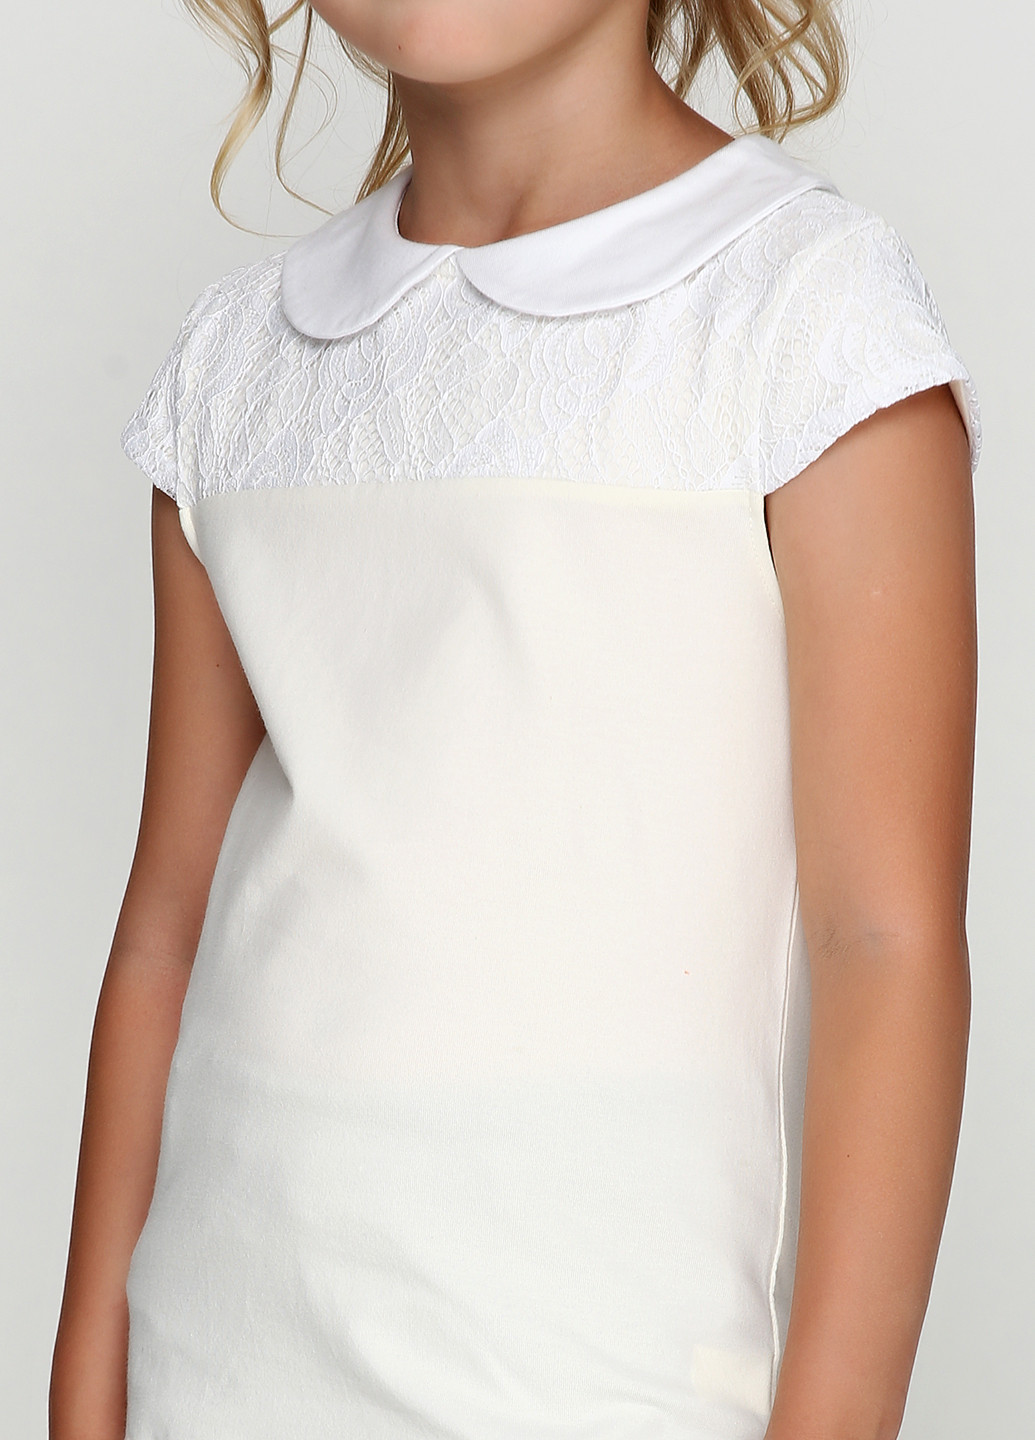 Молочная однотонная блузка с коротким рукавом Vidoli летняя